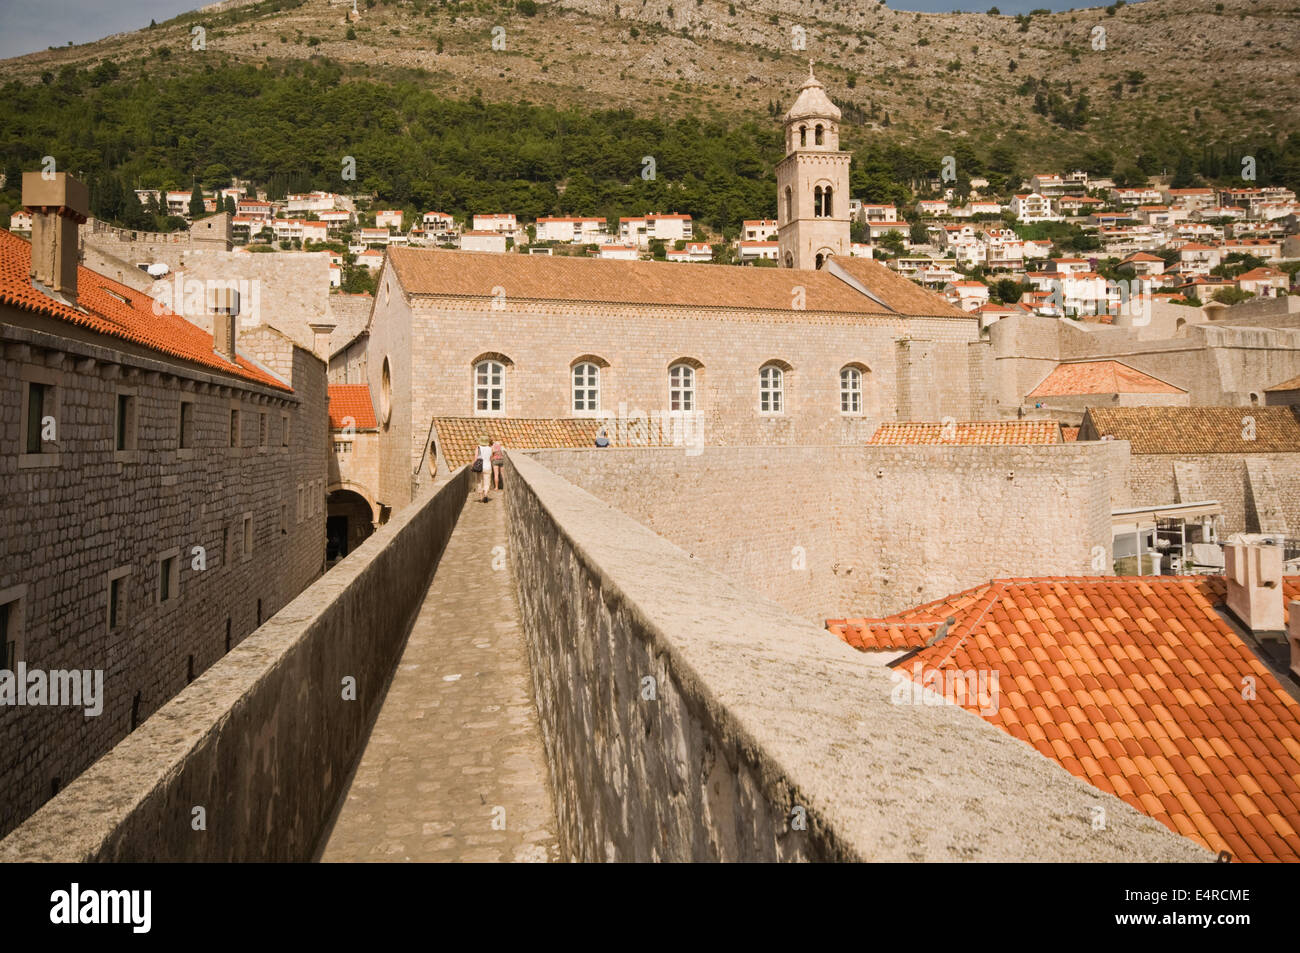 Europa, Kroatien, Dubrovnik, Touristen zu Fuß die Mauern der Stadt mit dominikanischen Kloster Museum (Dominikanski Samostan-Muze) Stockfoto